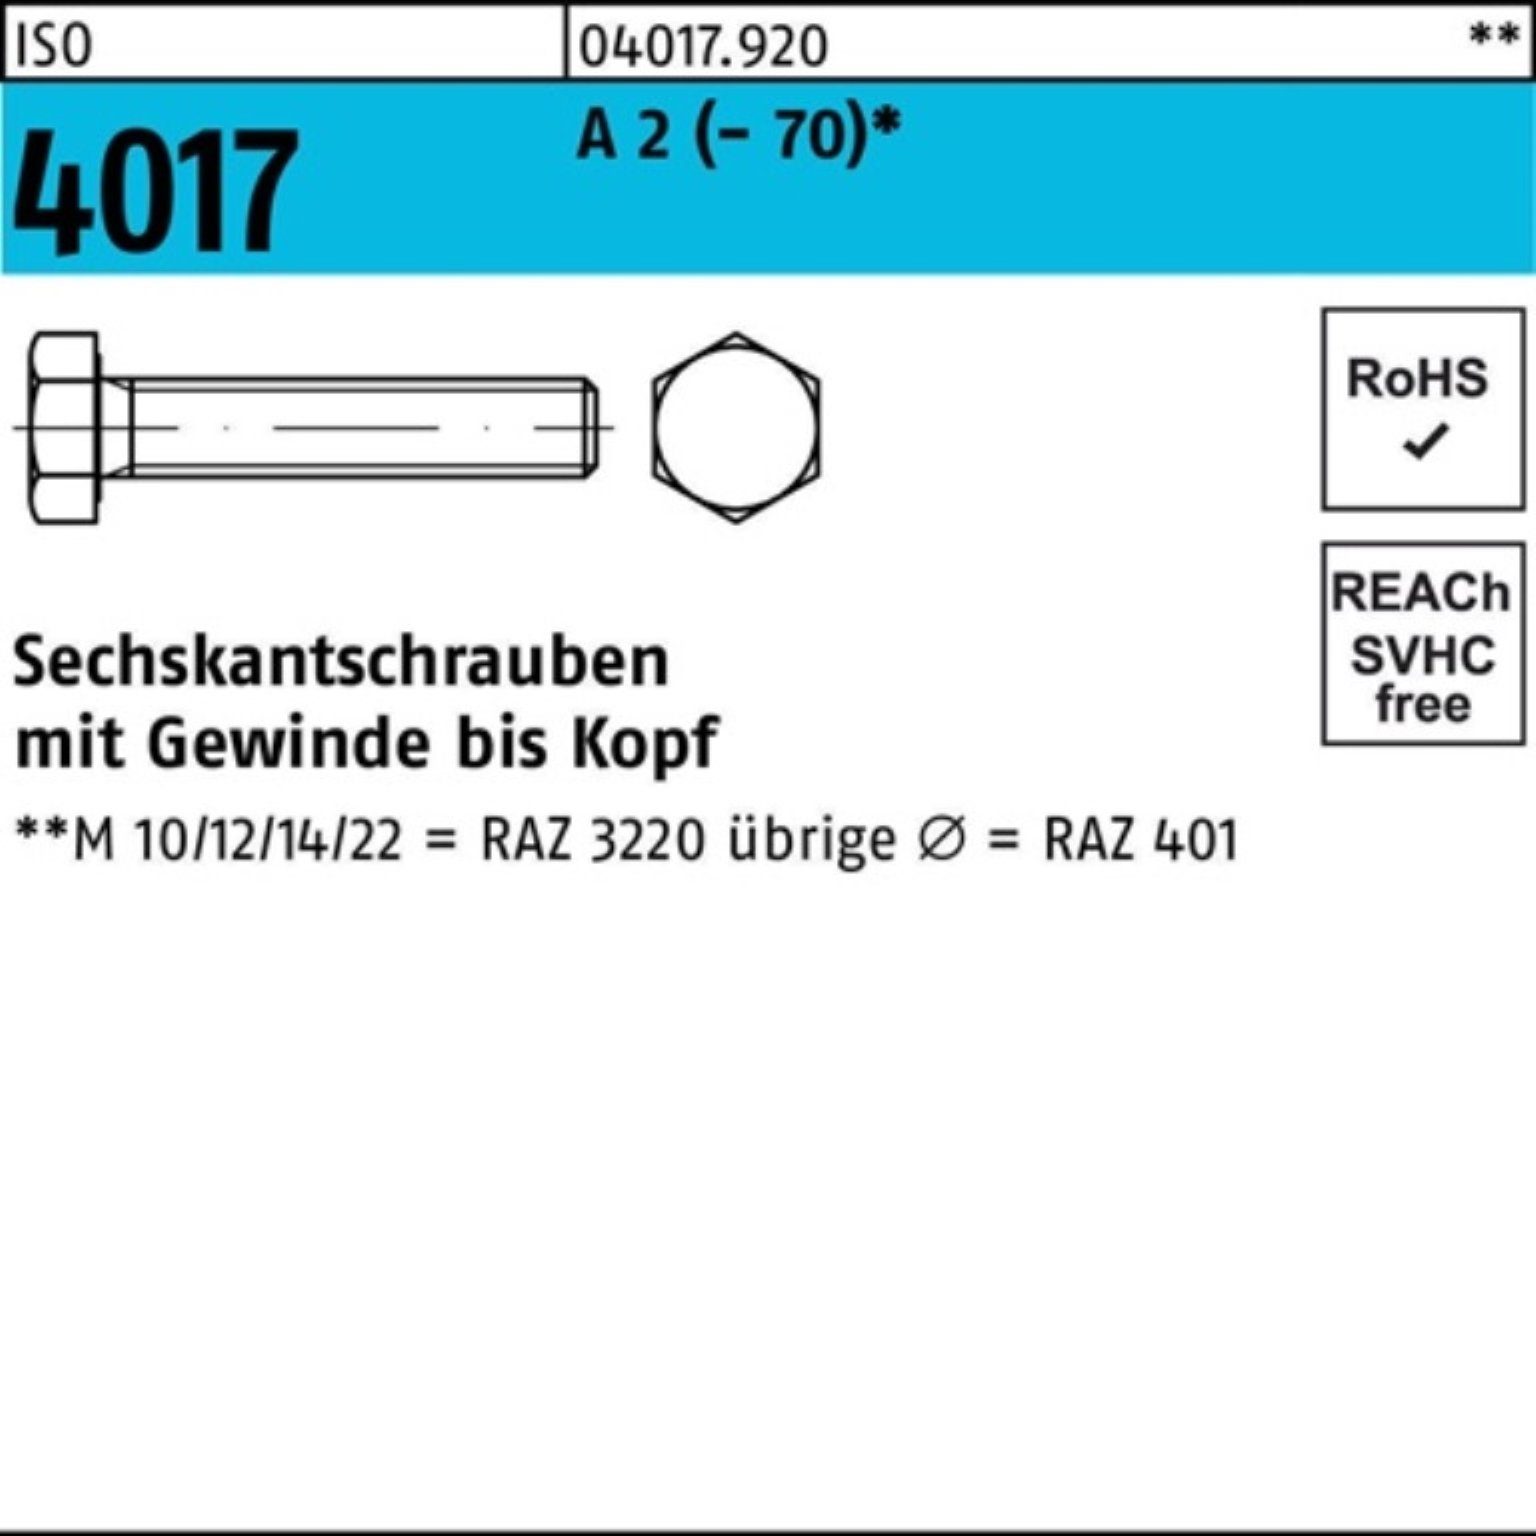 Bufab Sechskantschraube 100er Pack A VG Sechskantschraube Stück 100 2 4017 ISO M16x (70) 25